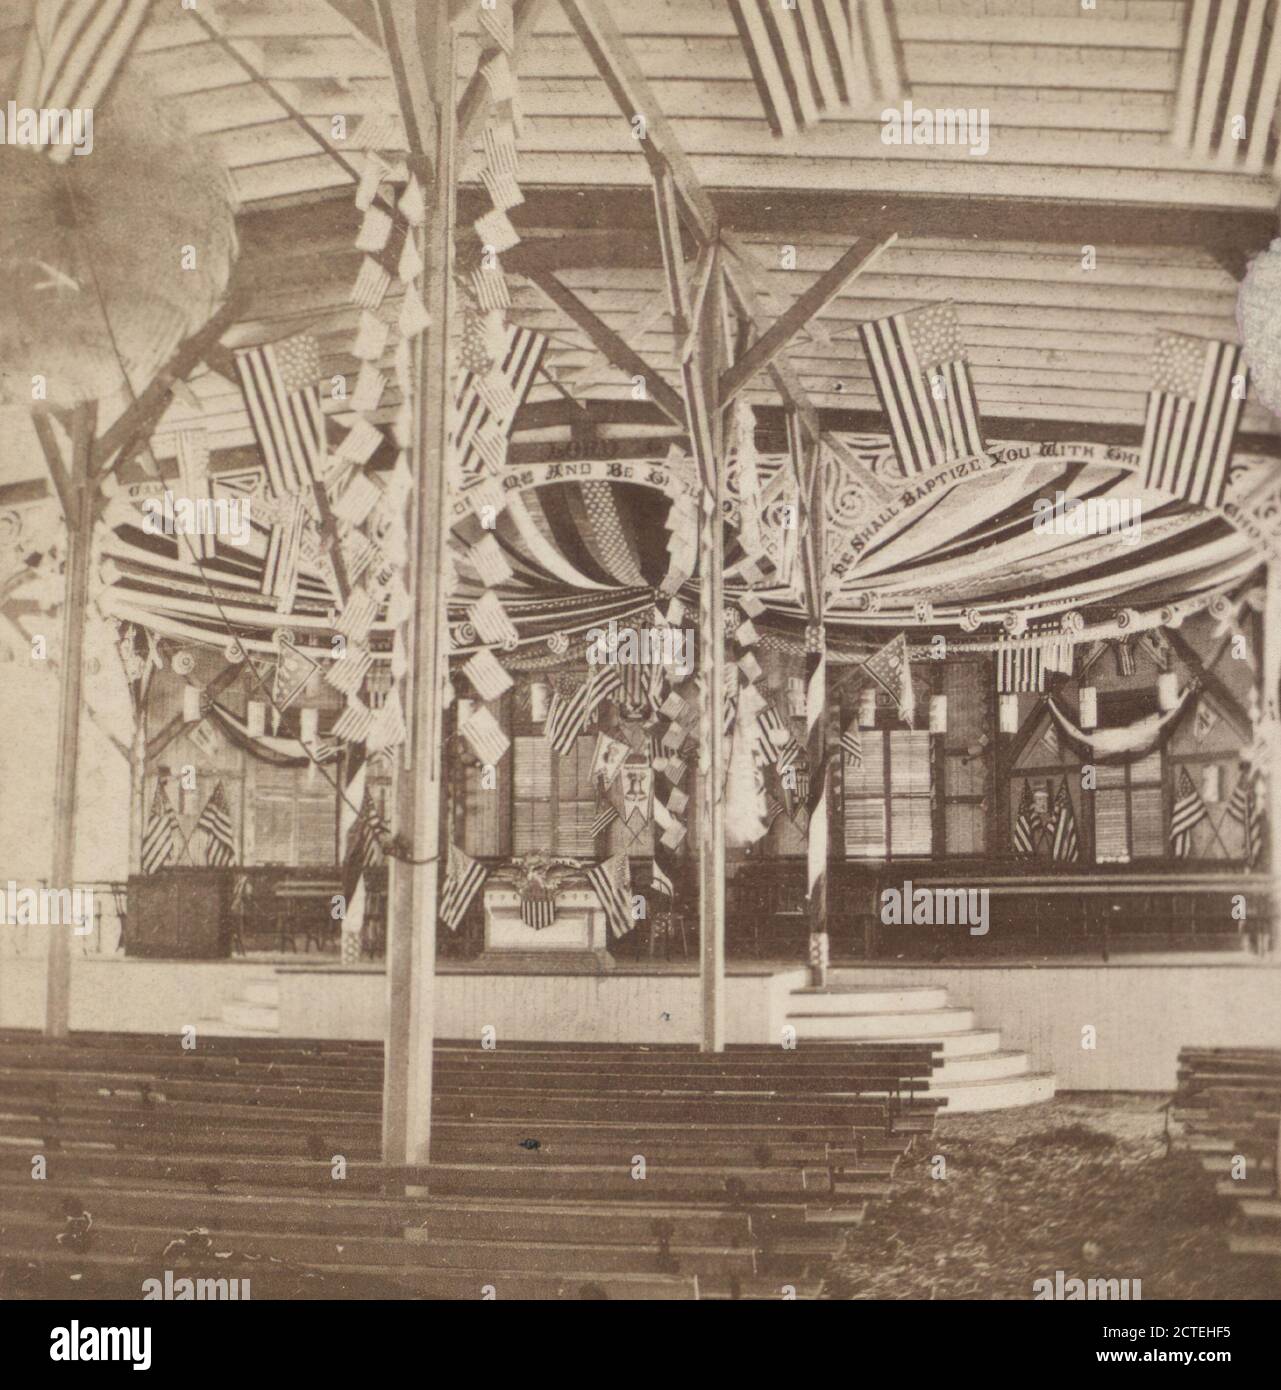 Auditorium, 4 juillet, Pach, G. W. (Gustavus W.) (1845-1904), Tourisme, drapeaux, célébrations du 4 juillet, auditoriums, New Jersey, Asbury Park (N.J.), Ocean Grove (N.J Banque D'Images